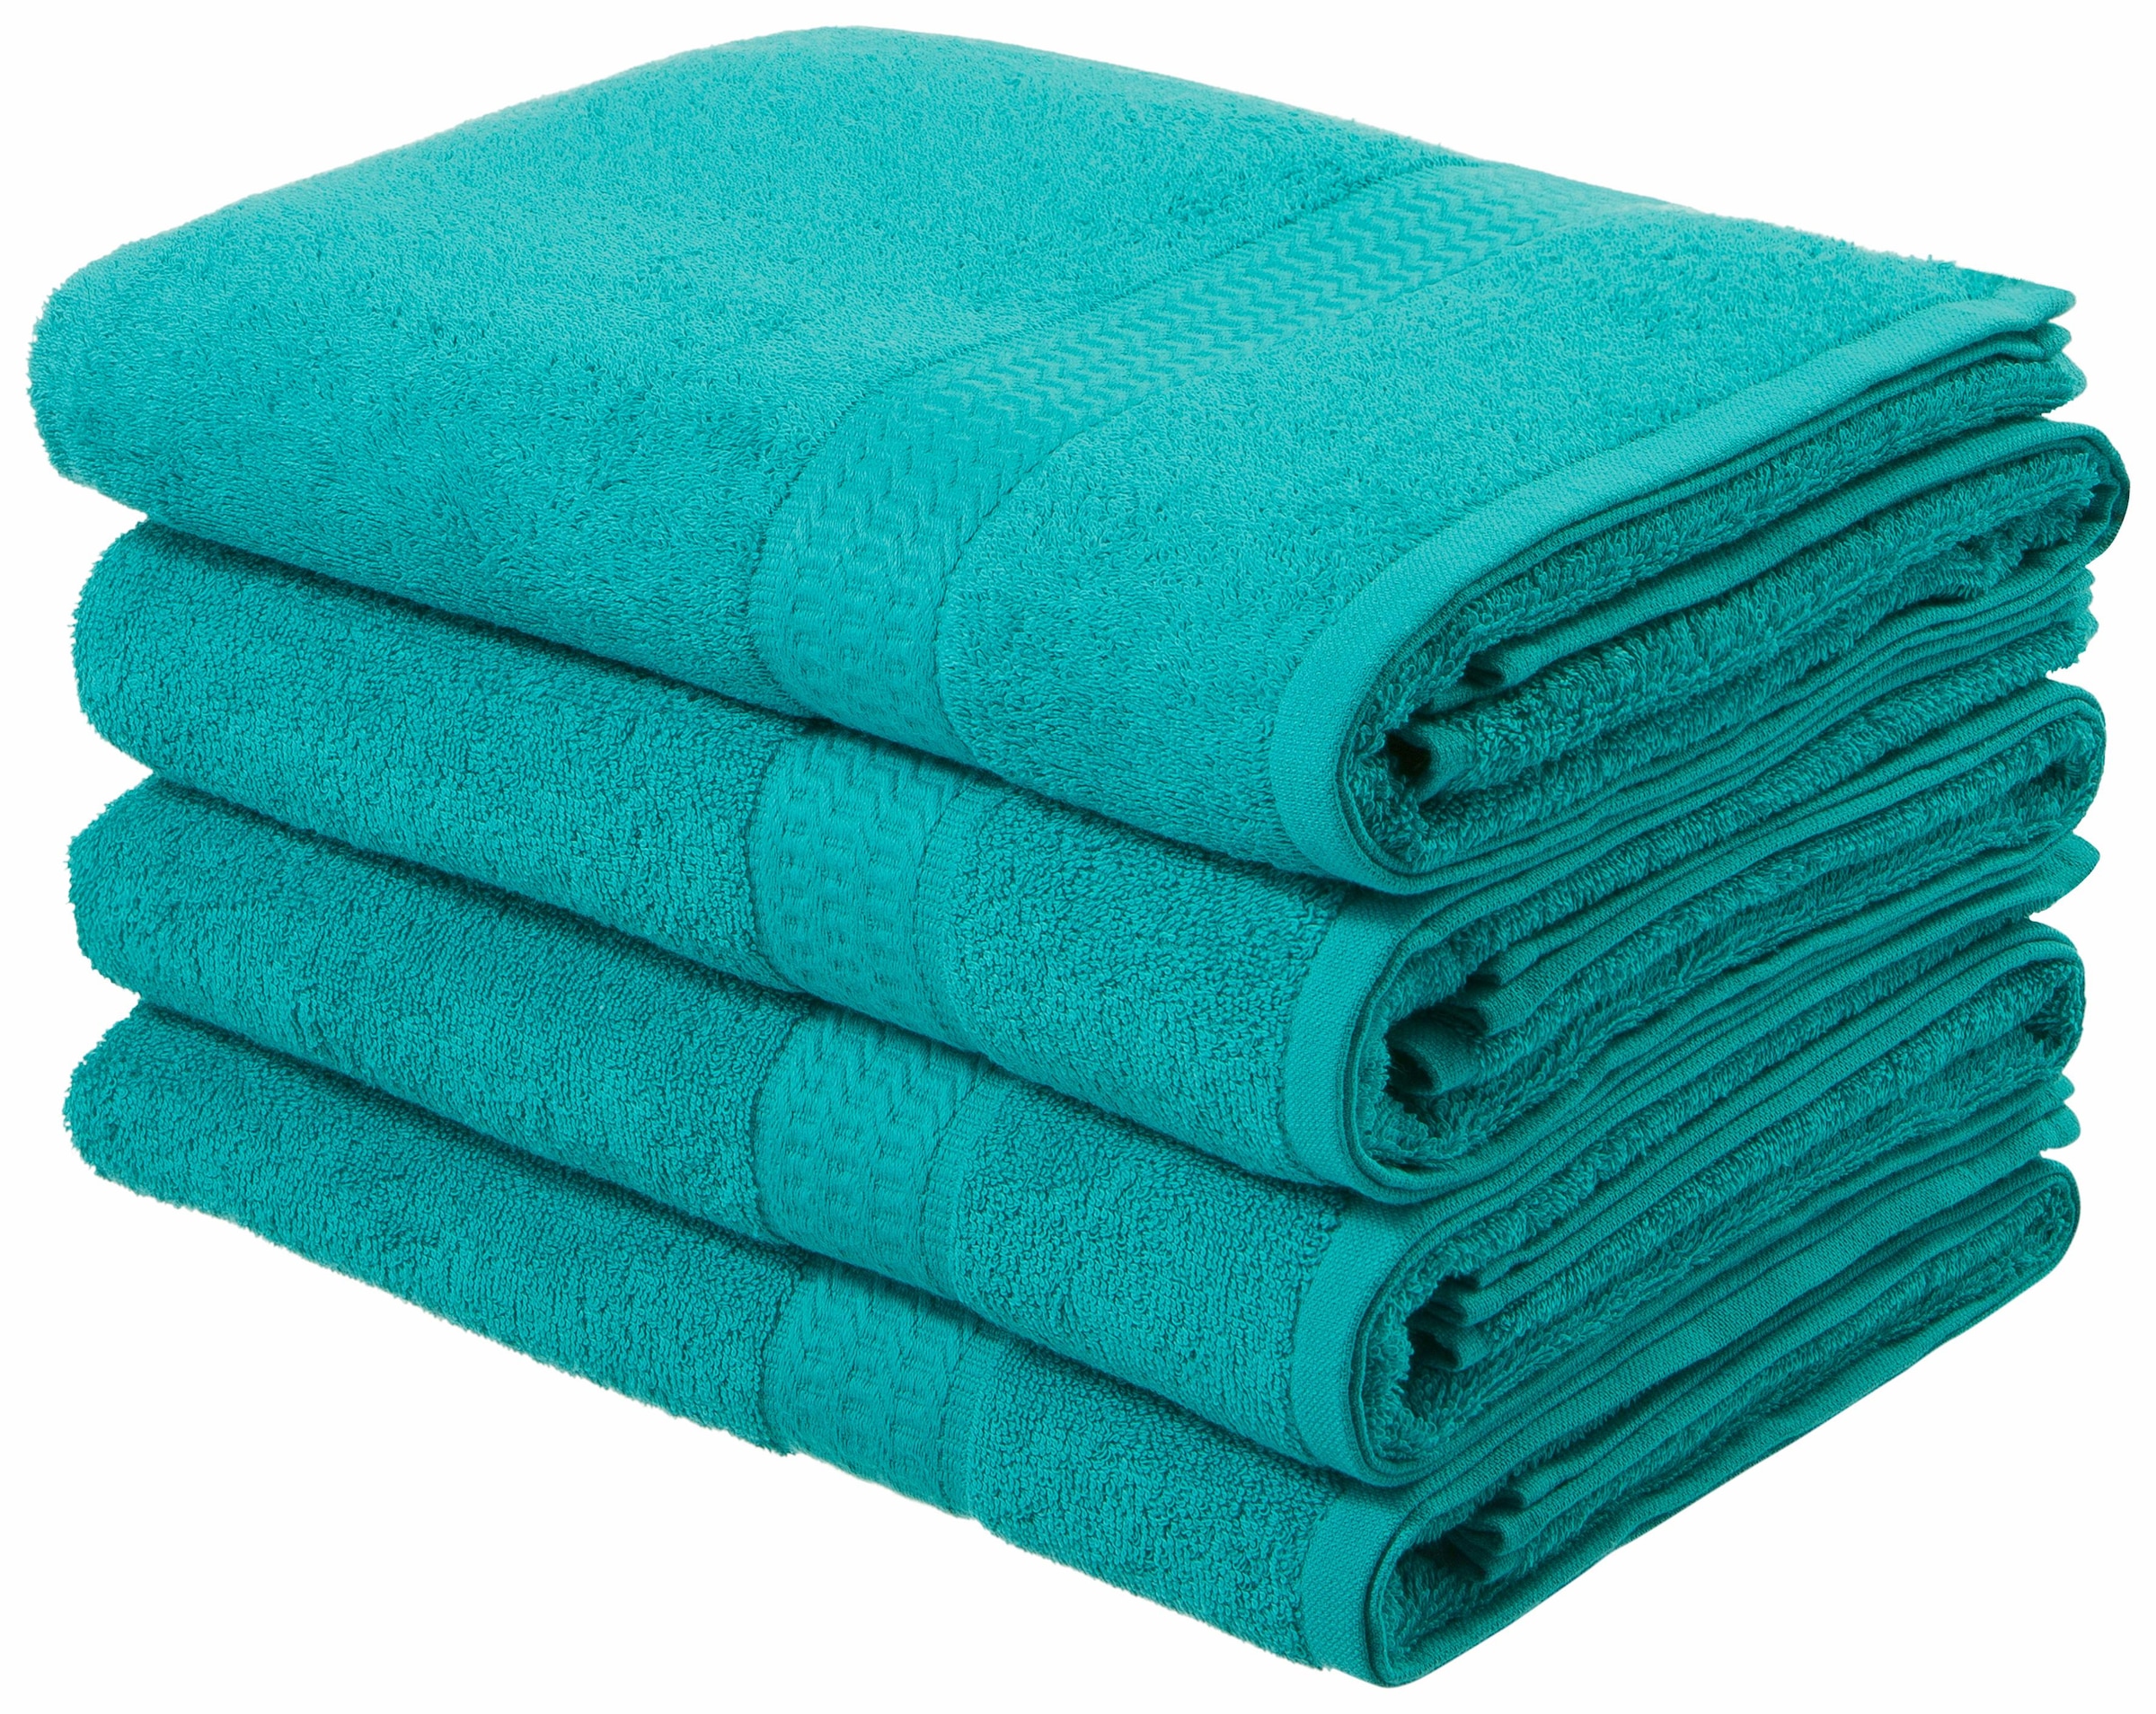 Озон полотенца для ванной. Банное полотенце. Стопка полотенец. Полотенце банное махровое. Бирюзовые полотенца стопка.